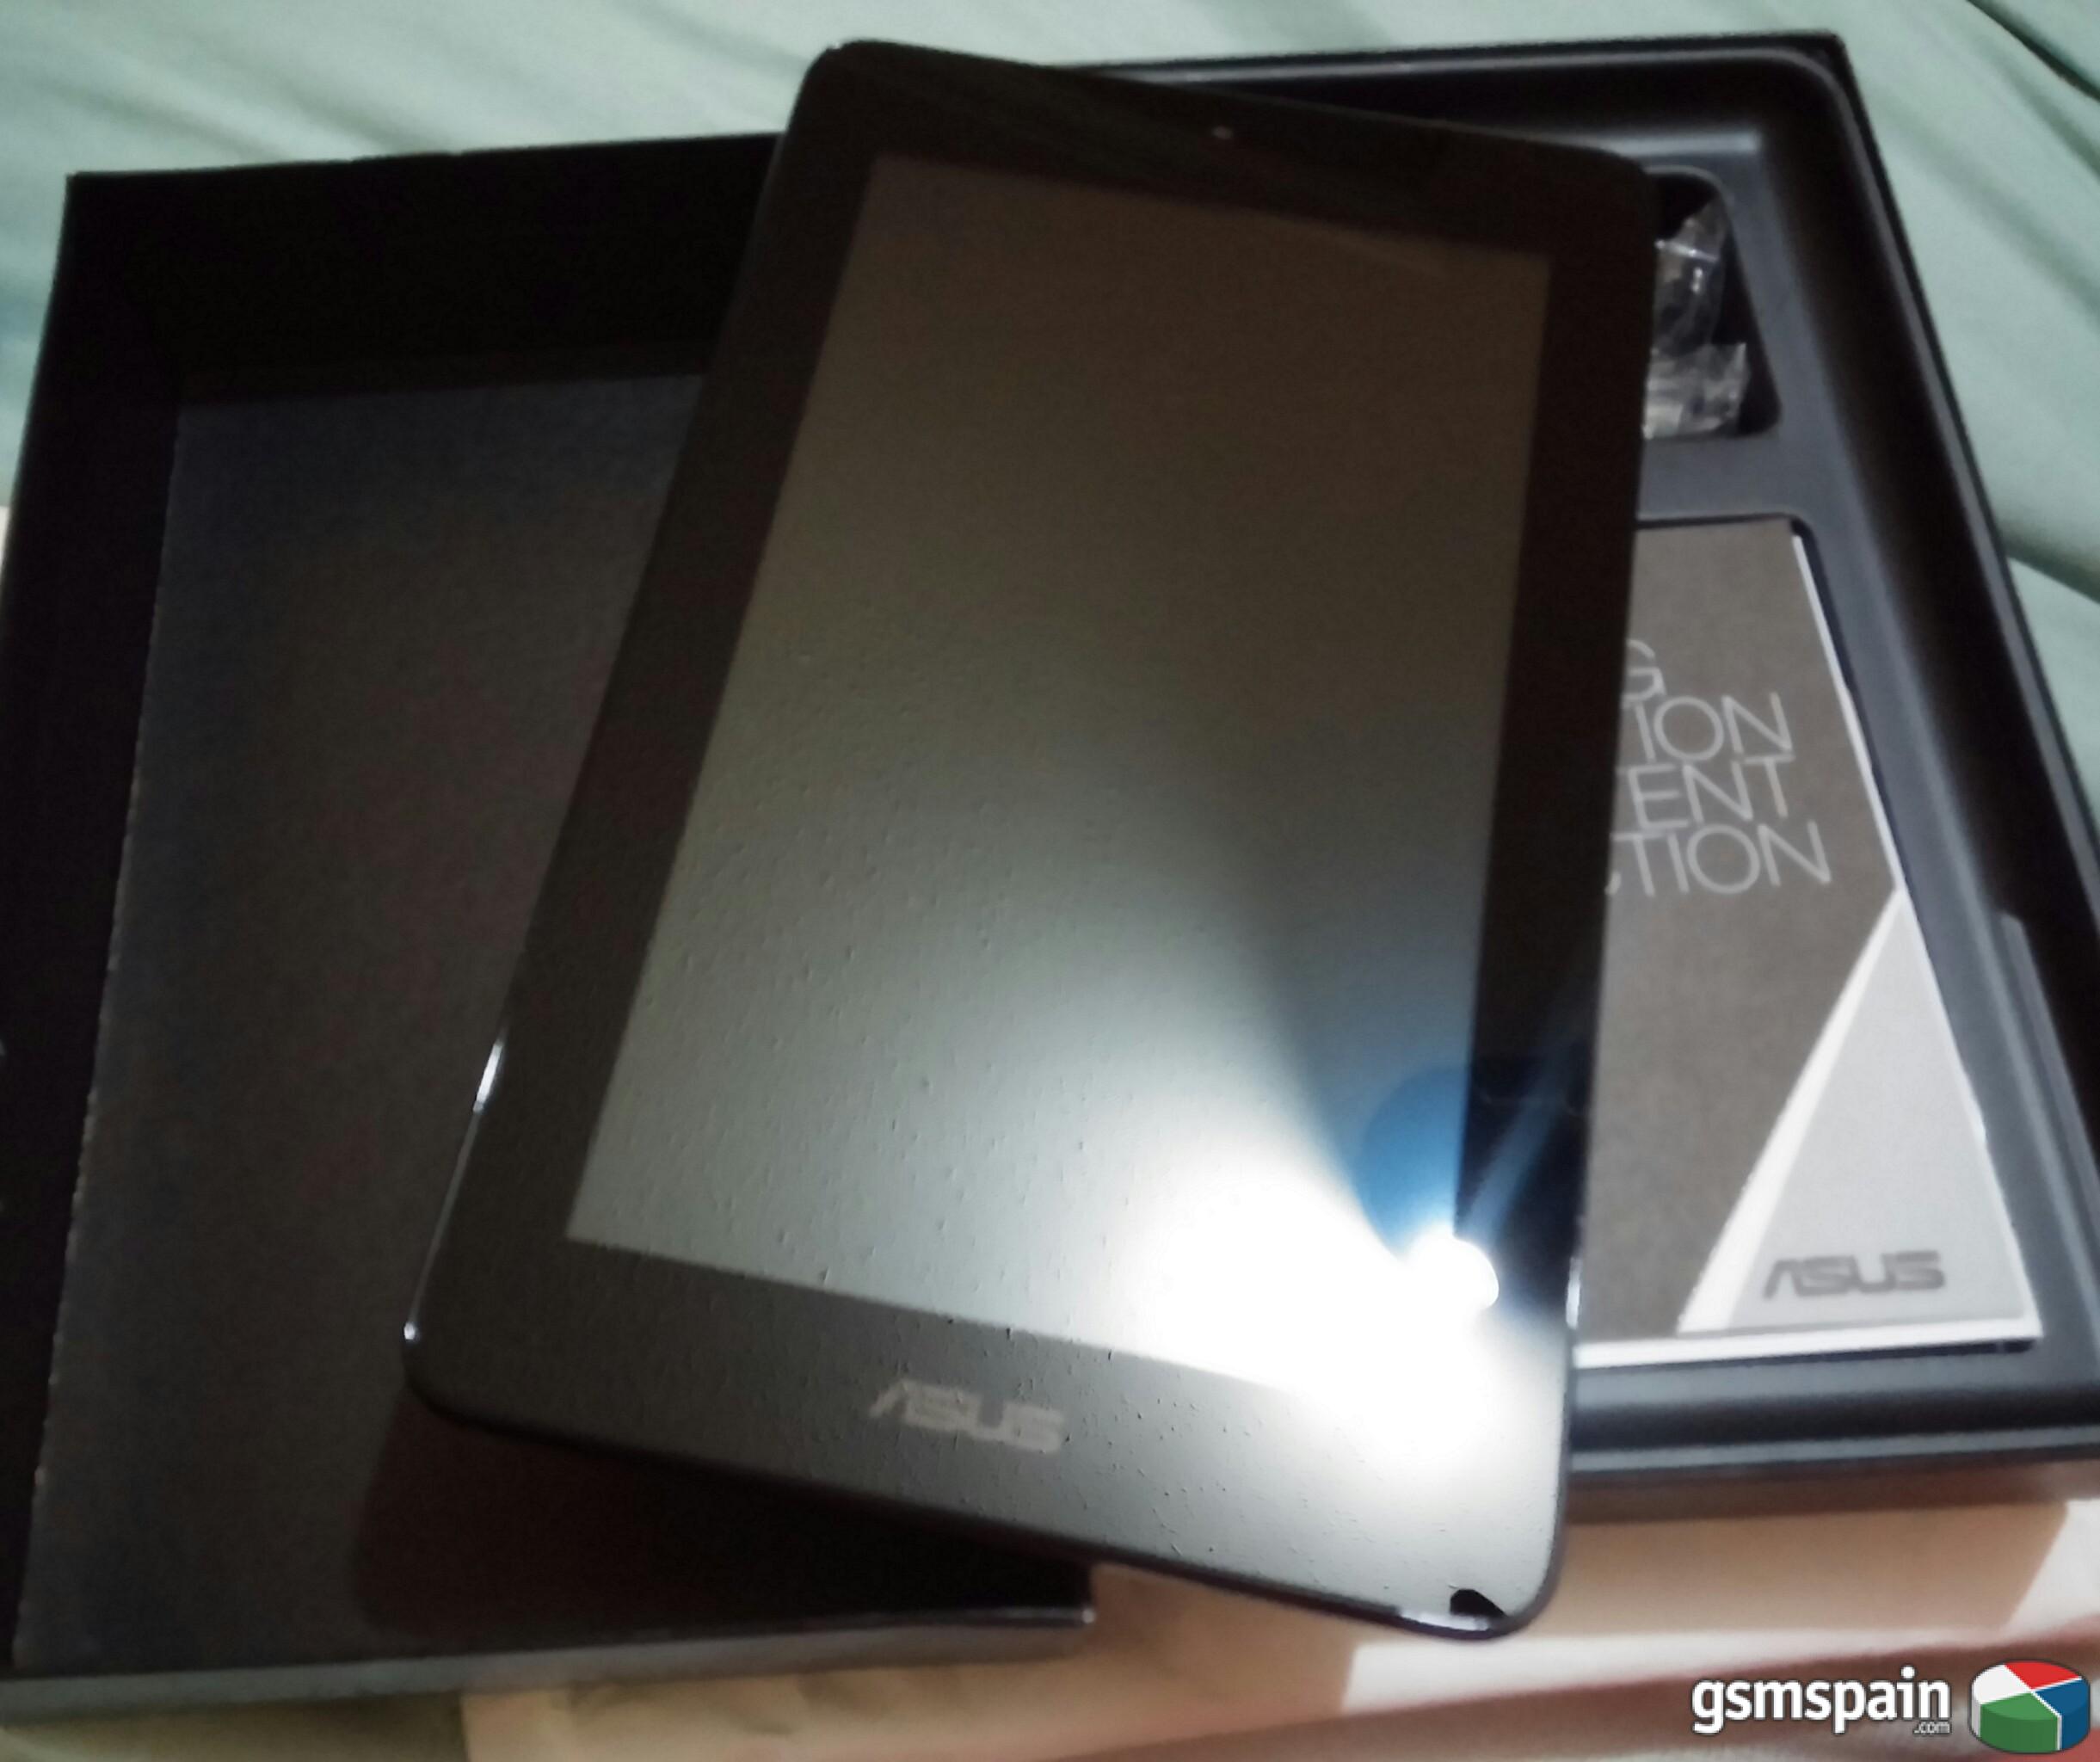 [VENDO] Vendo 2 Asus memo pad 7" nuevas (Tablet)